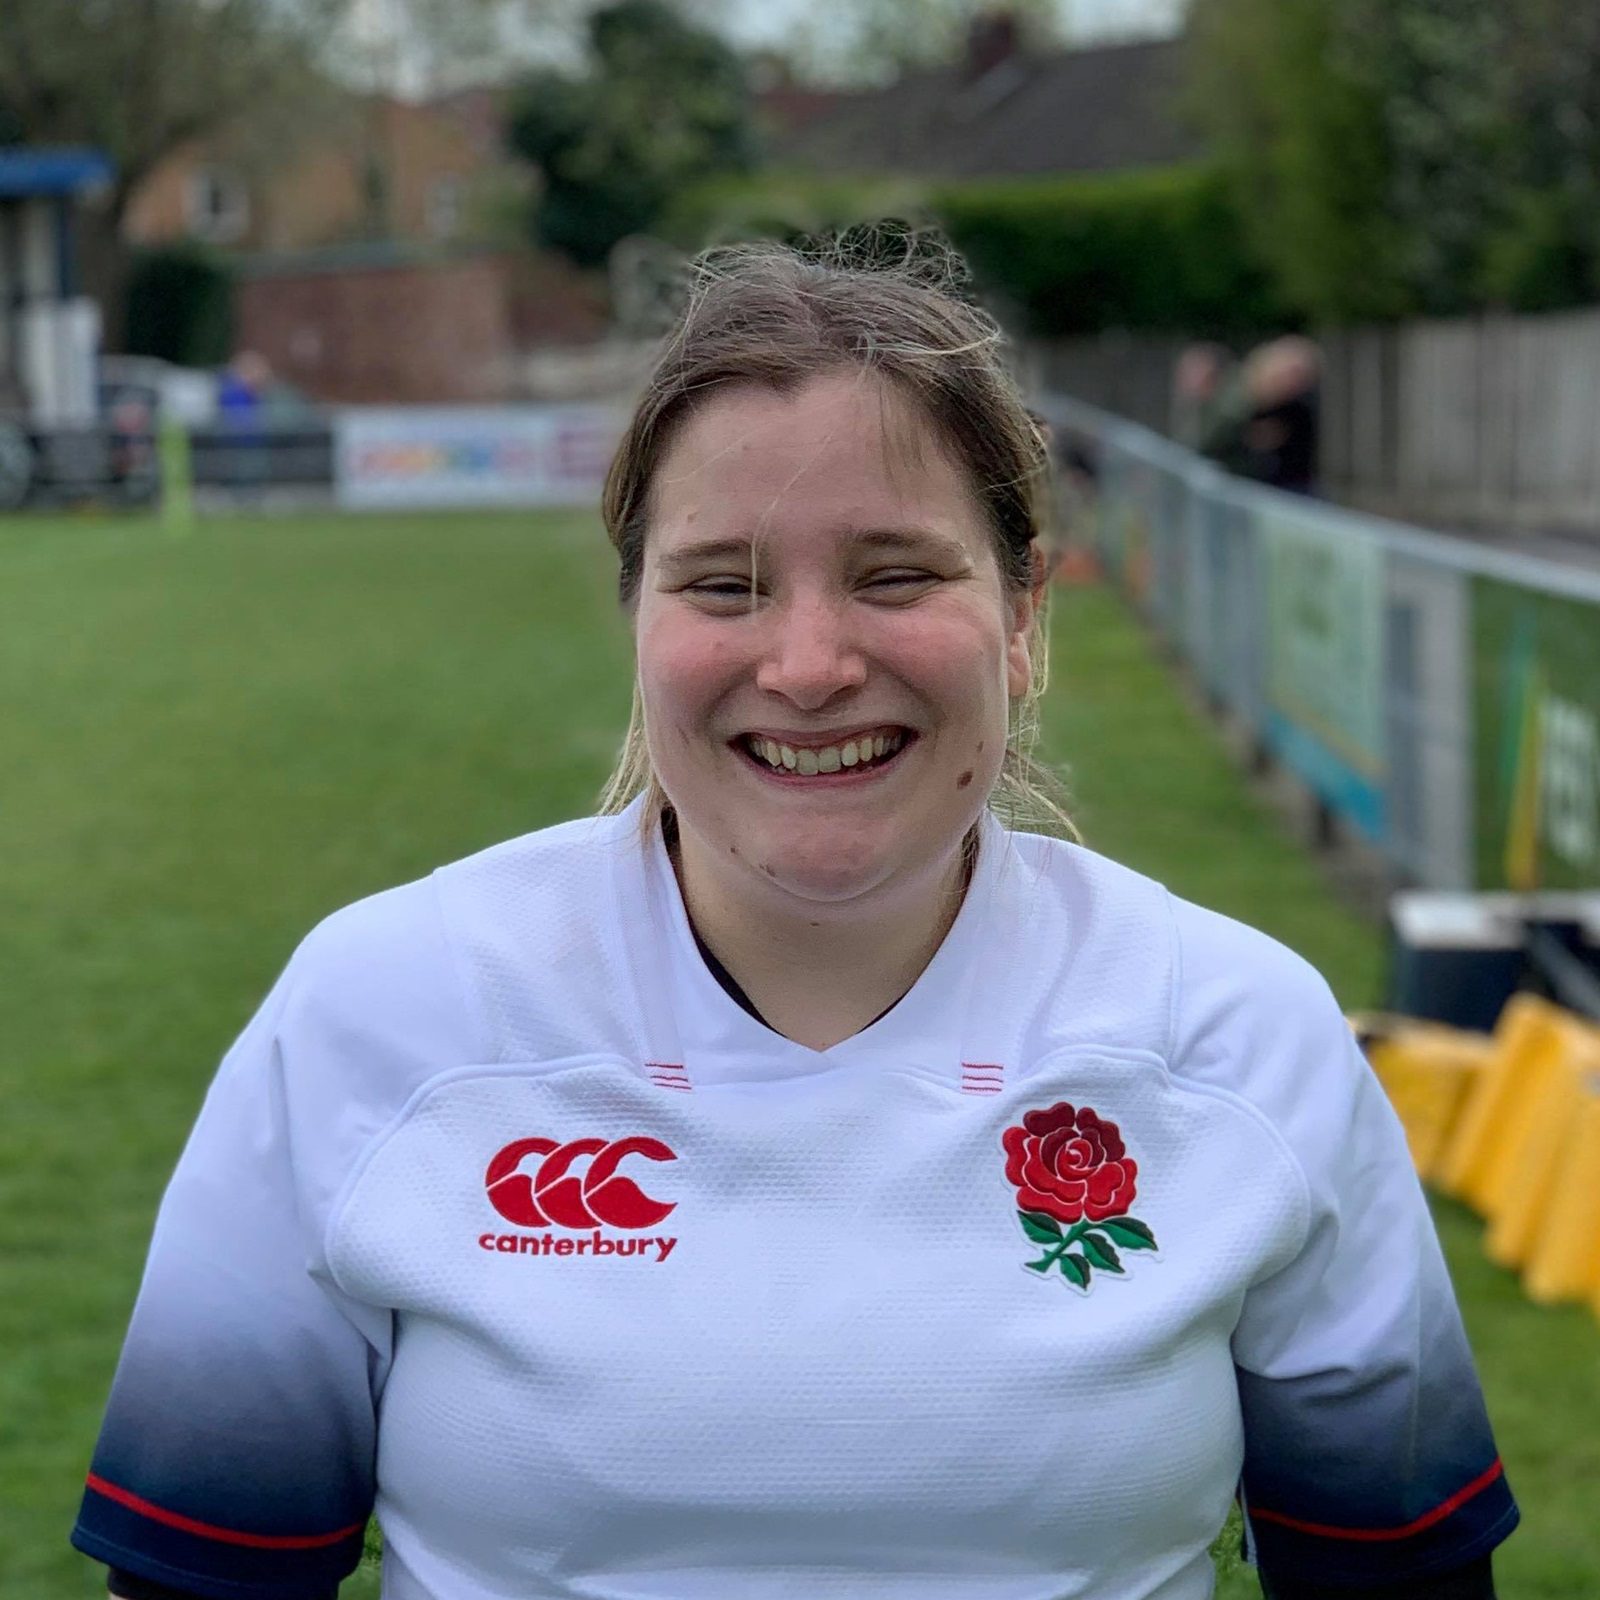 Beth Weller fait partie de l’équipe féminine de l’England Deaf Rugby Union, un club de rugby pour les personnes sourdes en Angleterre. Elle raconte comment elle poursuit ses ambitions malgré sa perte d’audition.